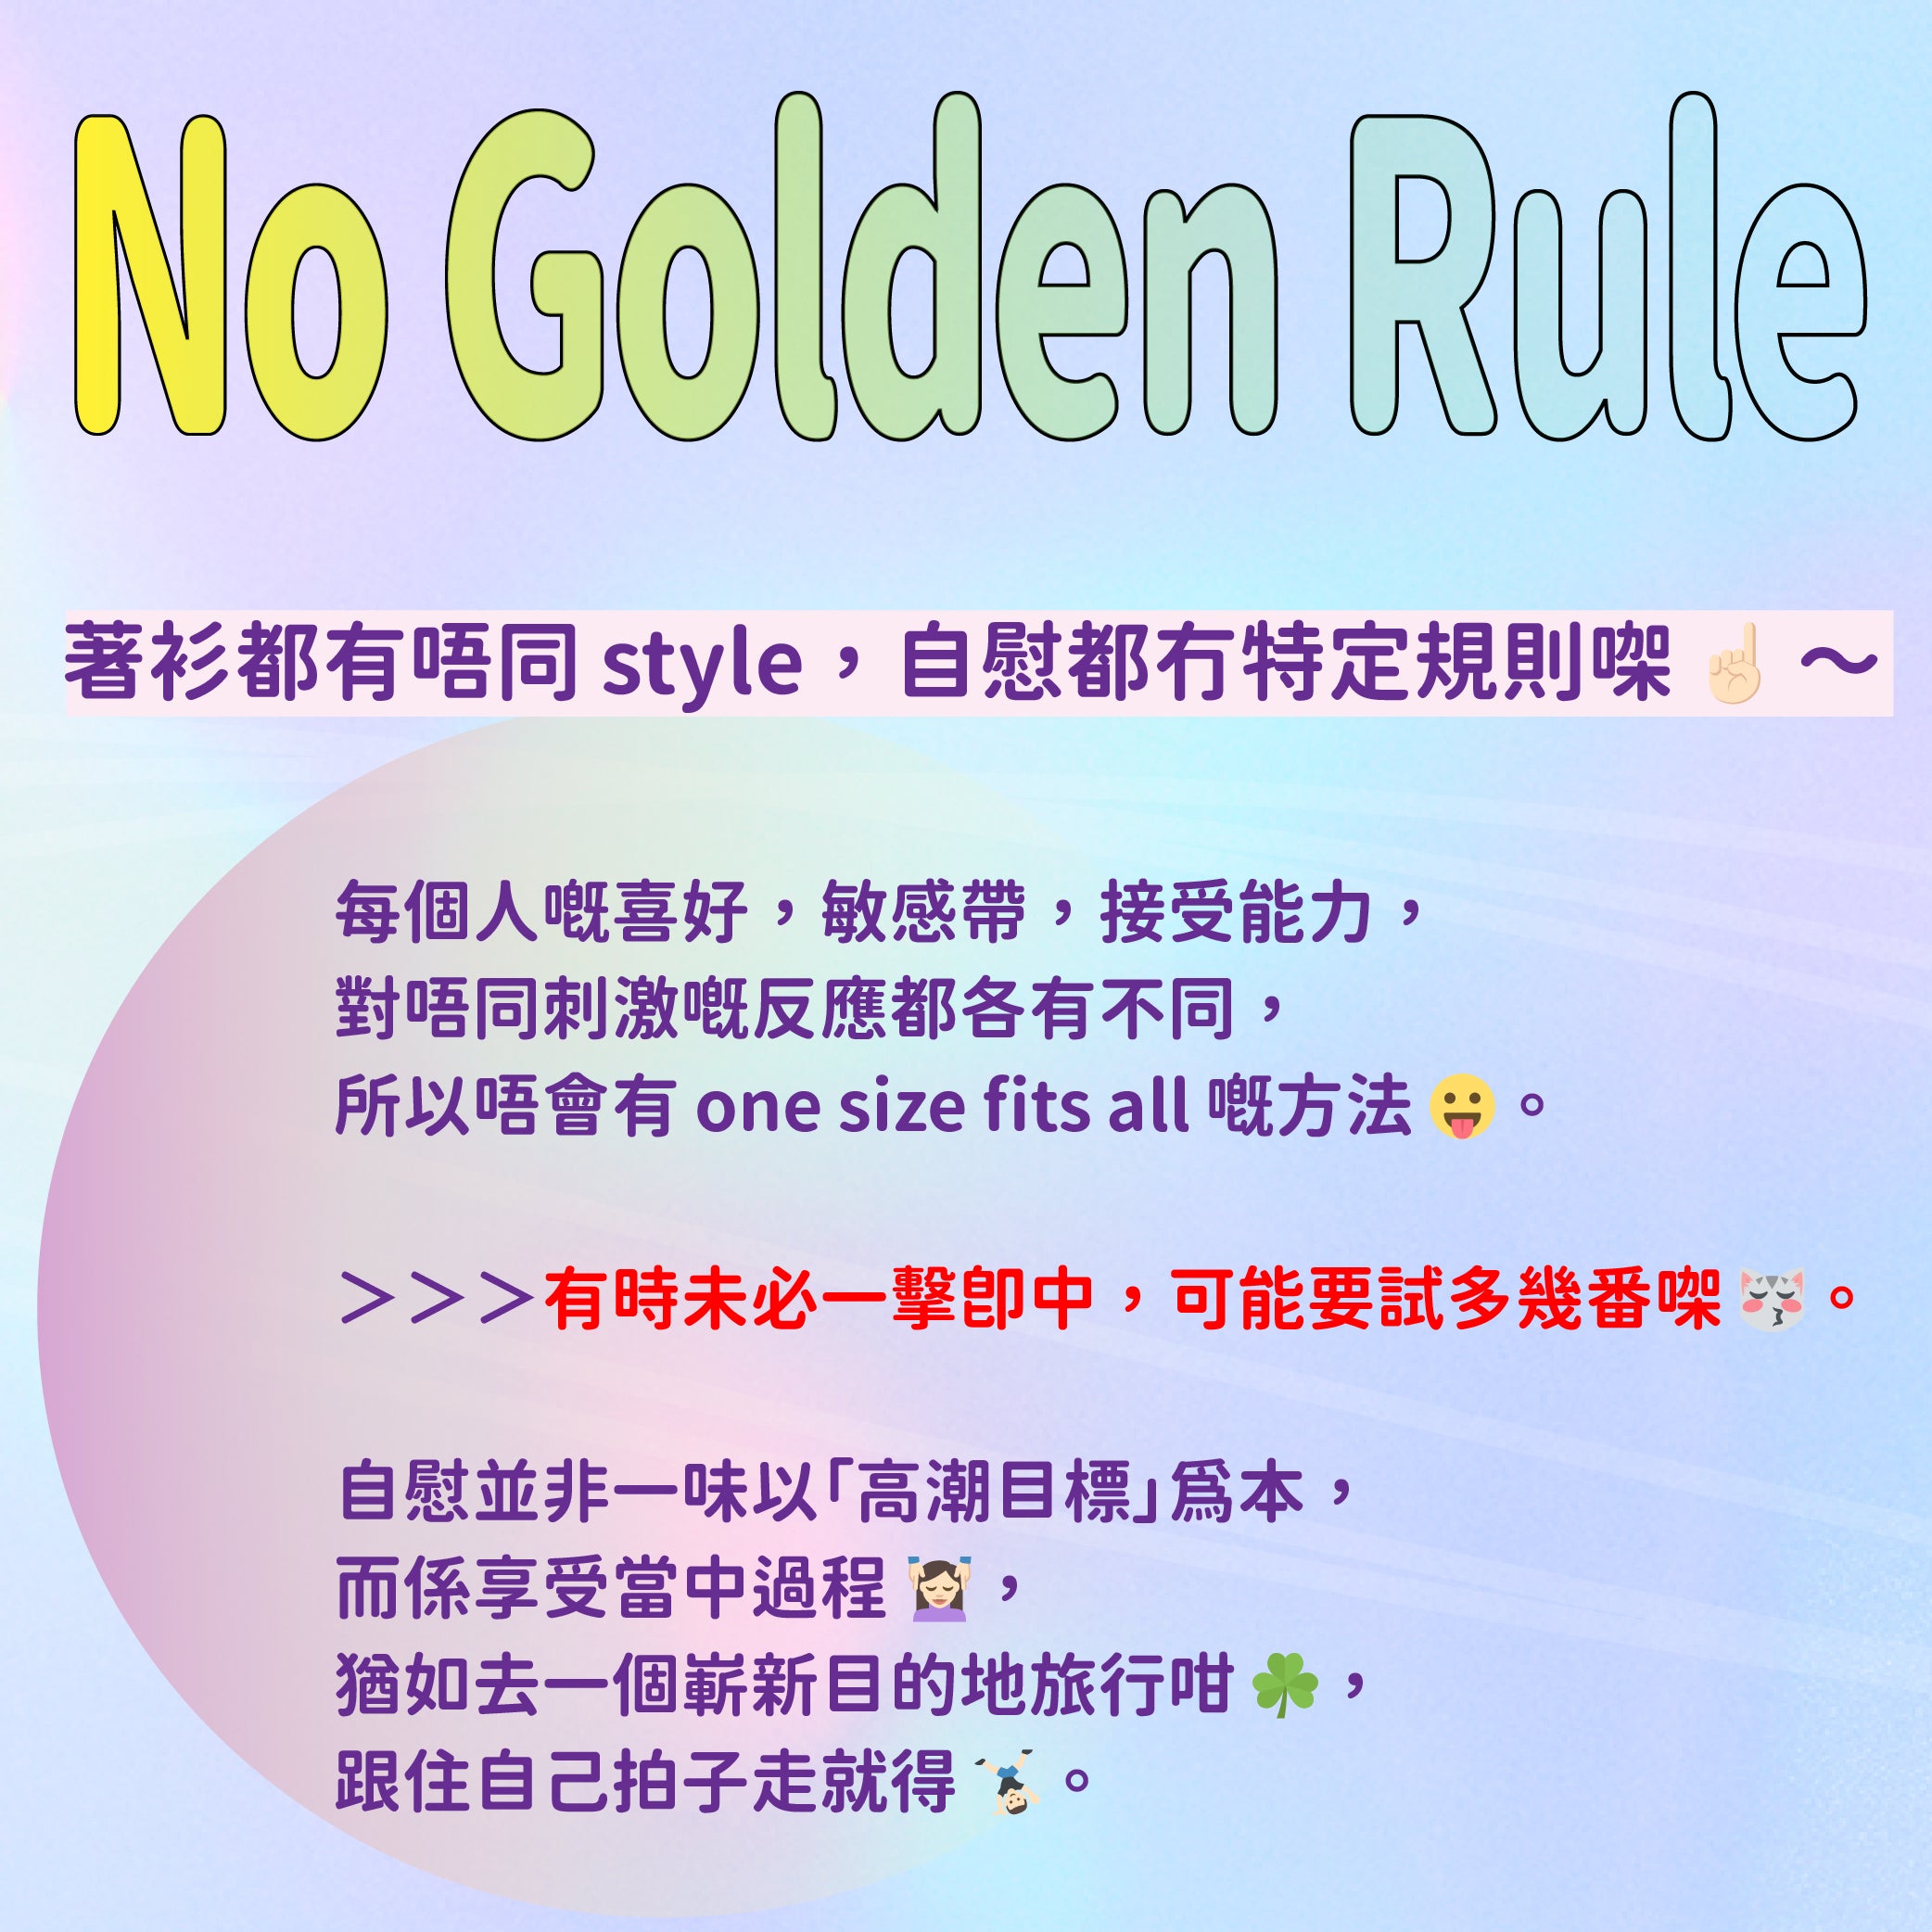 No Golden Rule